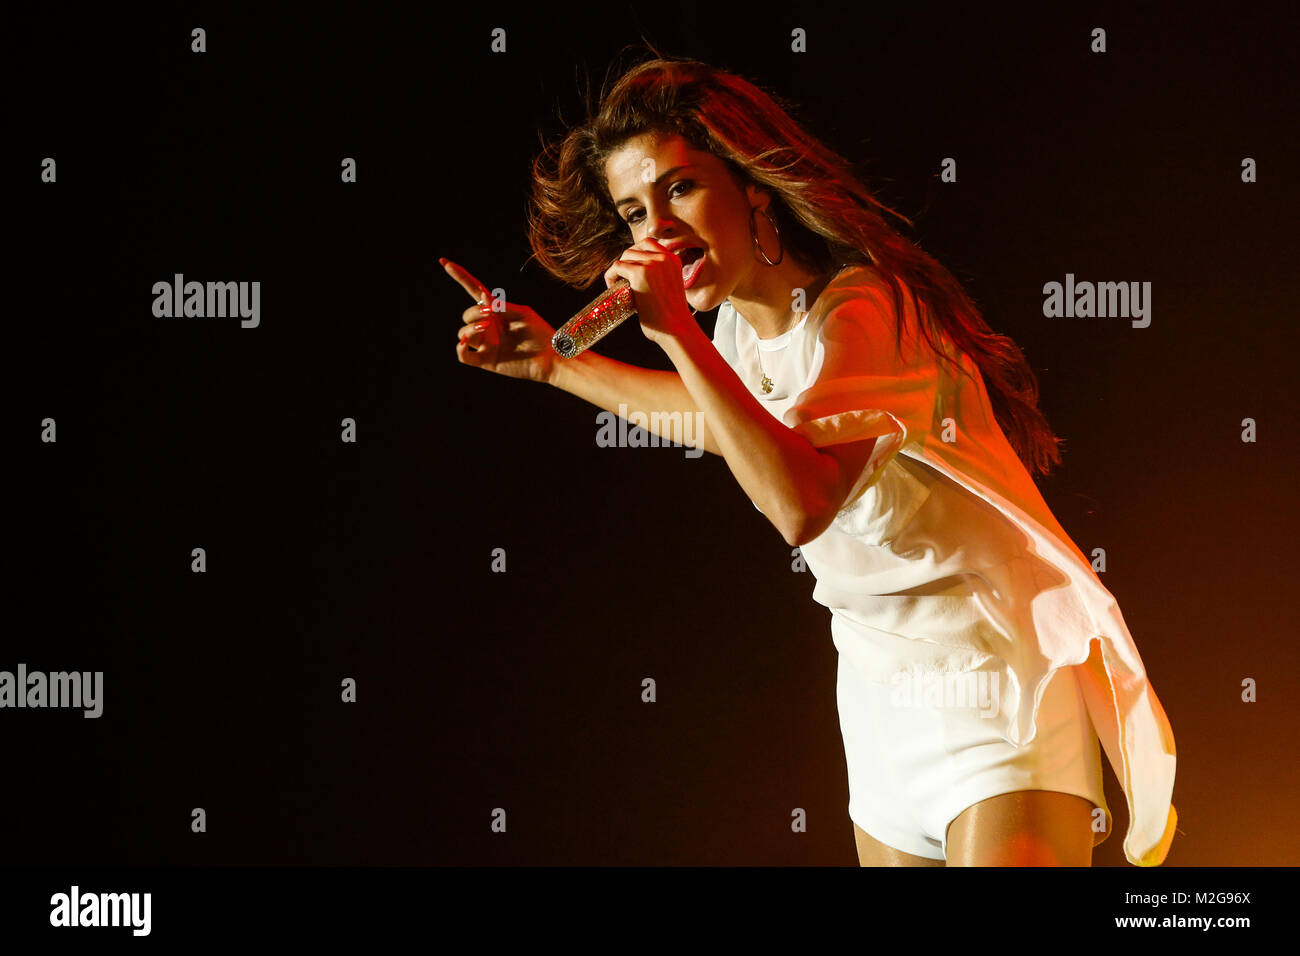 Die amerikanische Schauspielerin und Sängerin Selena Gomez steht am Samstag (14.09.2013) in der Frankfurter Jahrhunderthalle auf der Bühne. Der ausverkaufte Auftritt in der Mainmetropole ist die einzige Tour-Station in Deutschland. +++ 3S foto / Foto: Sven-Sebastian Sajak Foto Stock